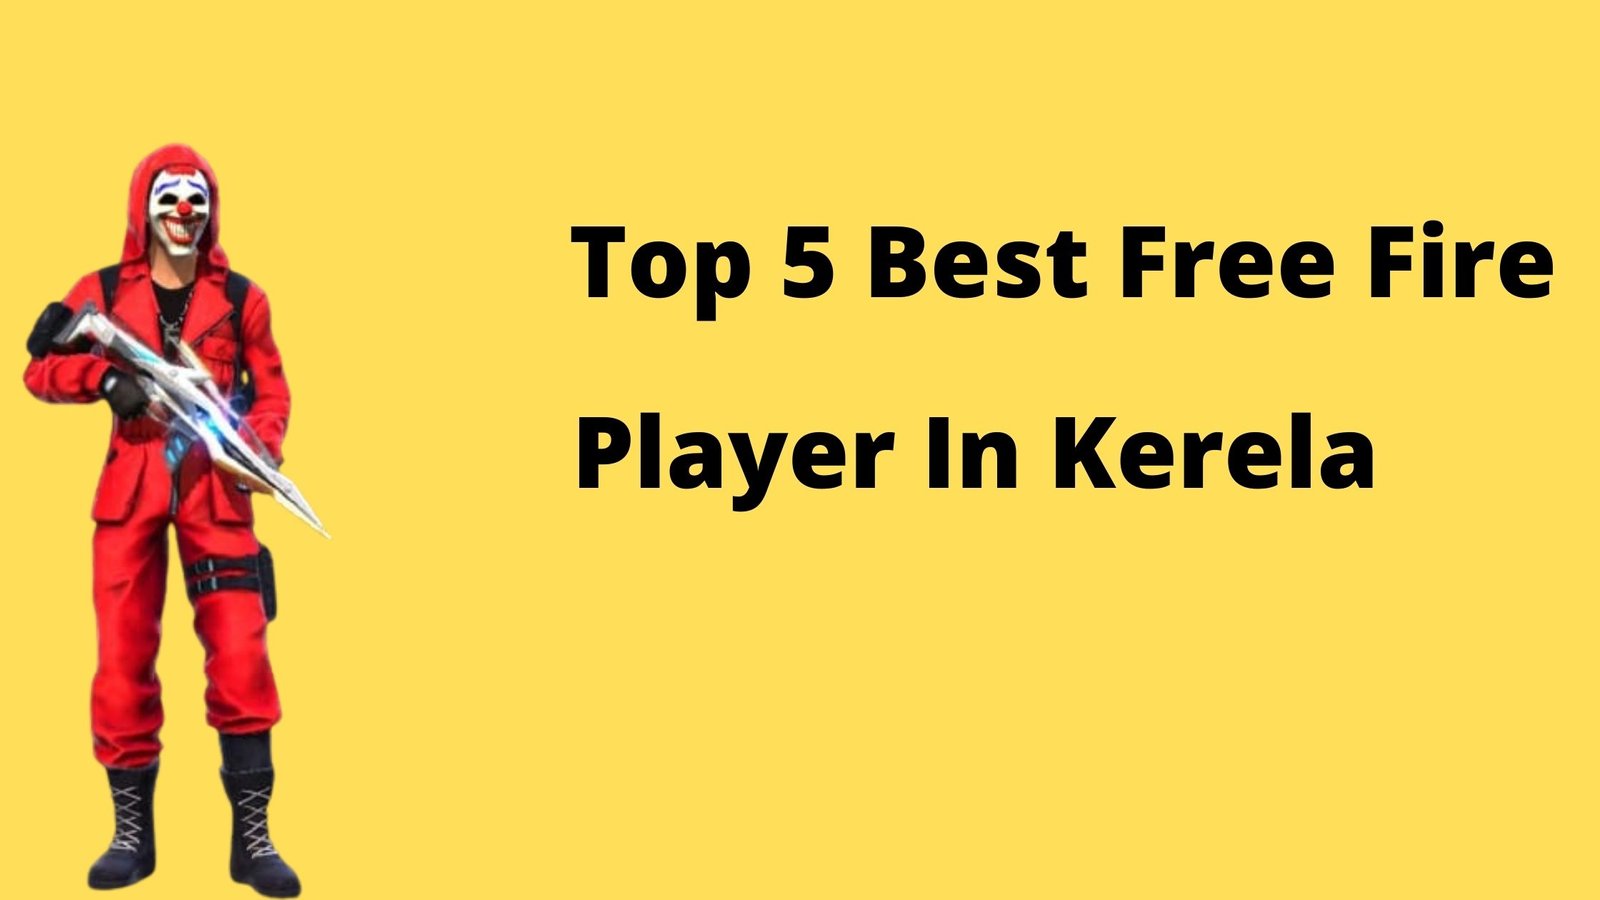 5 best free fire player in kerala